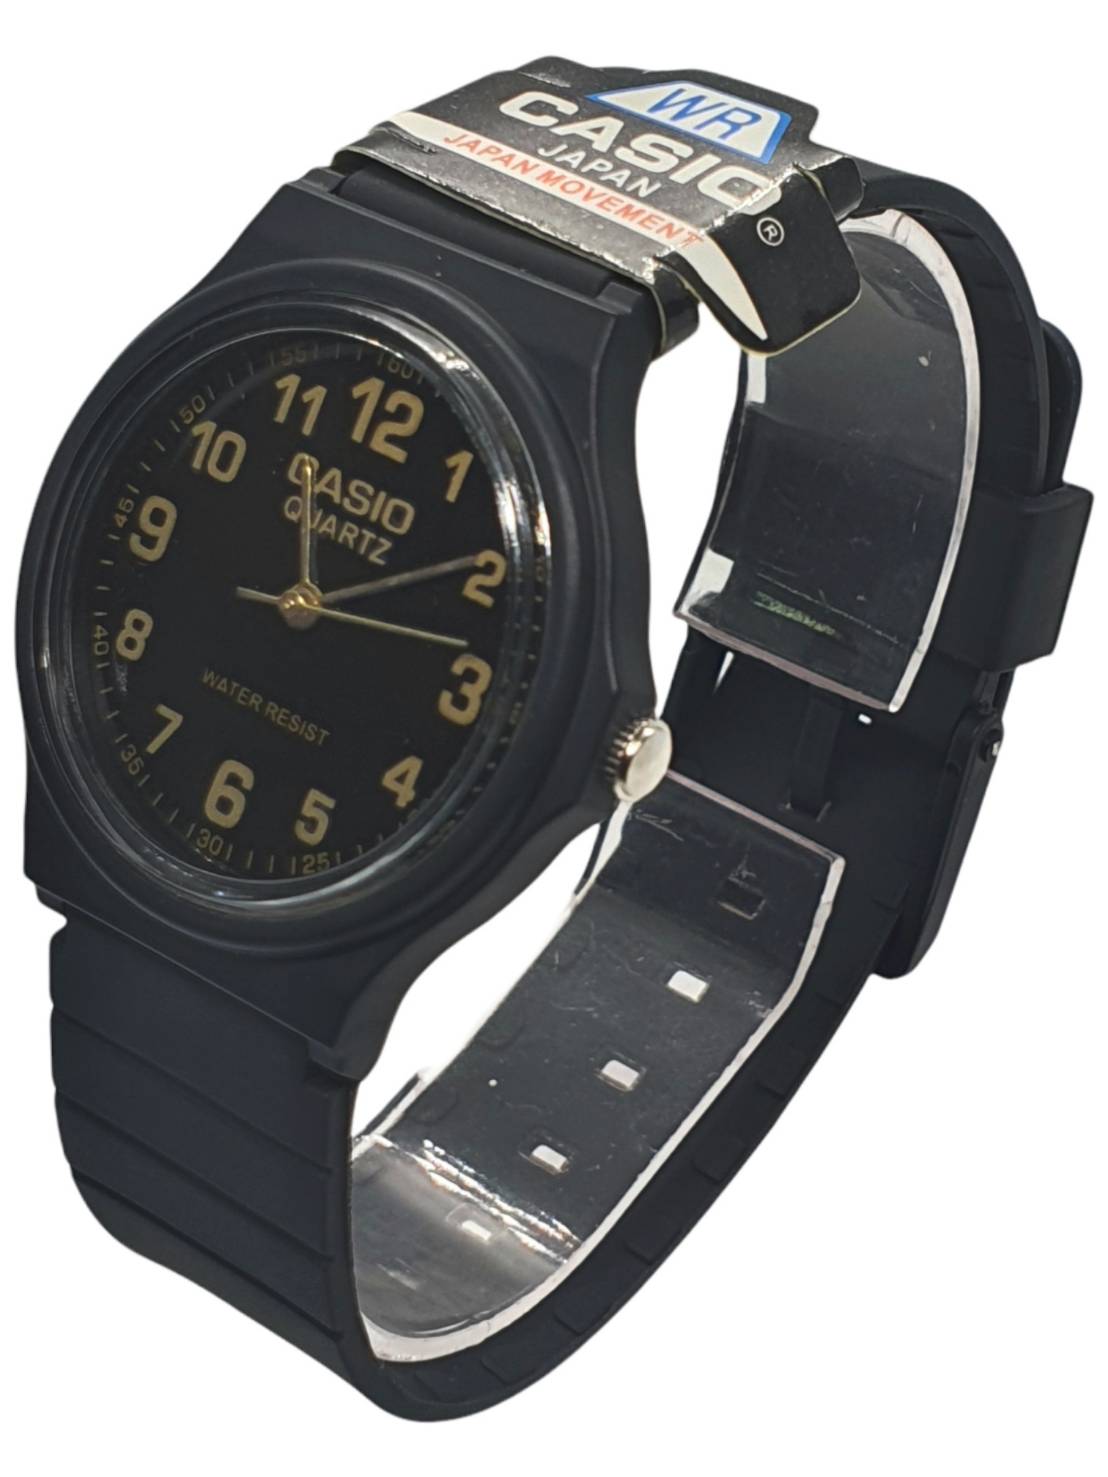 มุมมองเพิ่มเติมของสินค้า (กันน้ำ) นาฬิกาcasio พร้อมกล่อง นาฬิกาข้อมือผู้ชาย casio สายยาง สีดำ นาฬิกาผู้ชาย นาฬิกาคาสิโอ้ นาฬิกาเด็กโต RC537